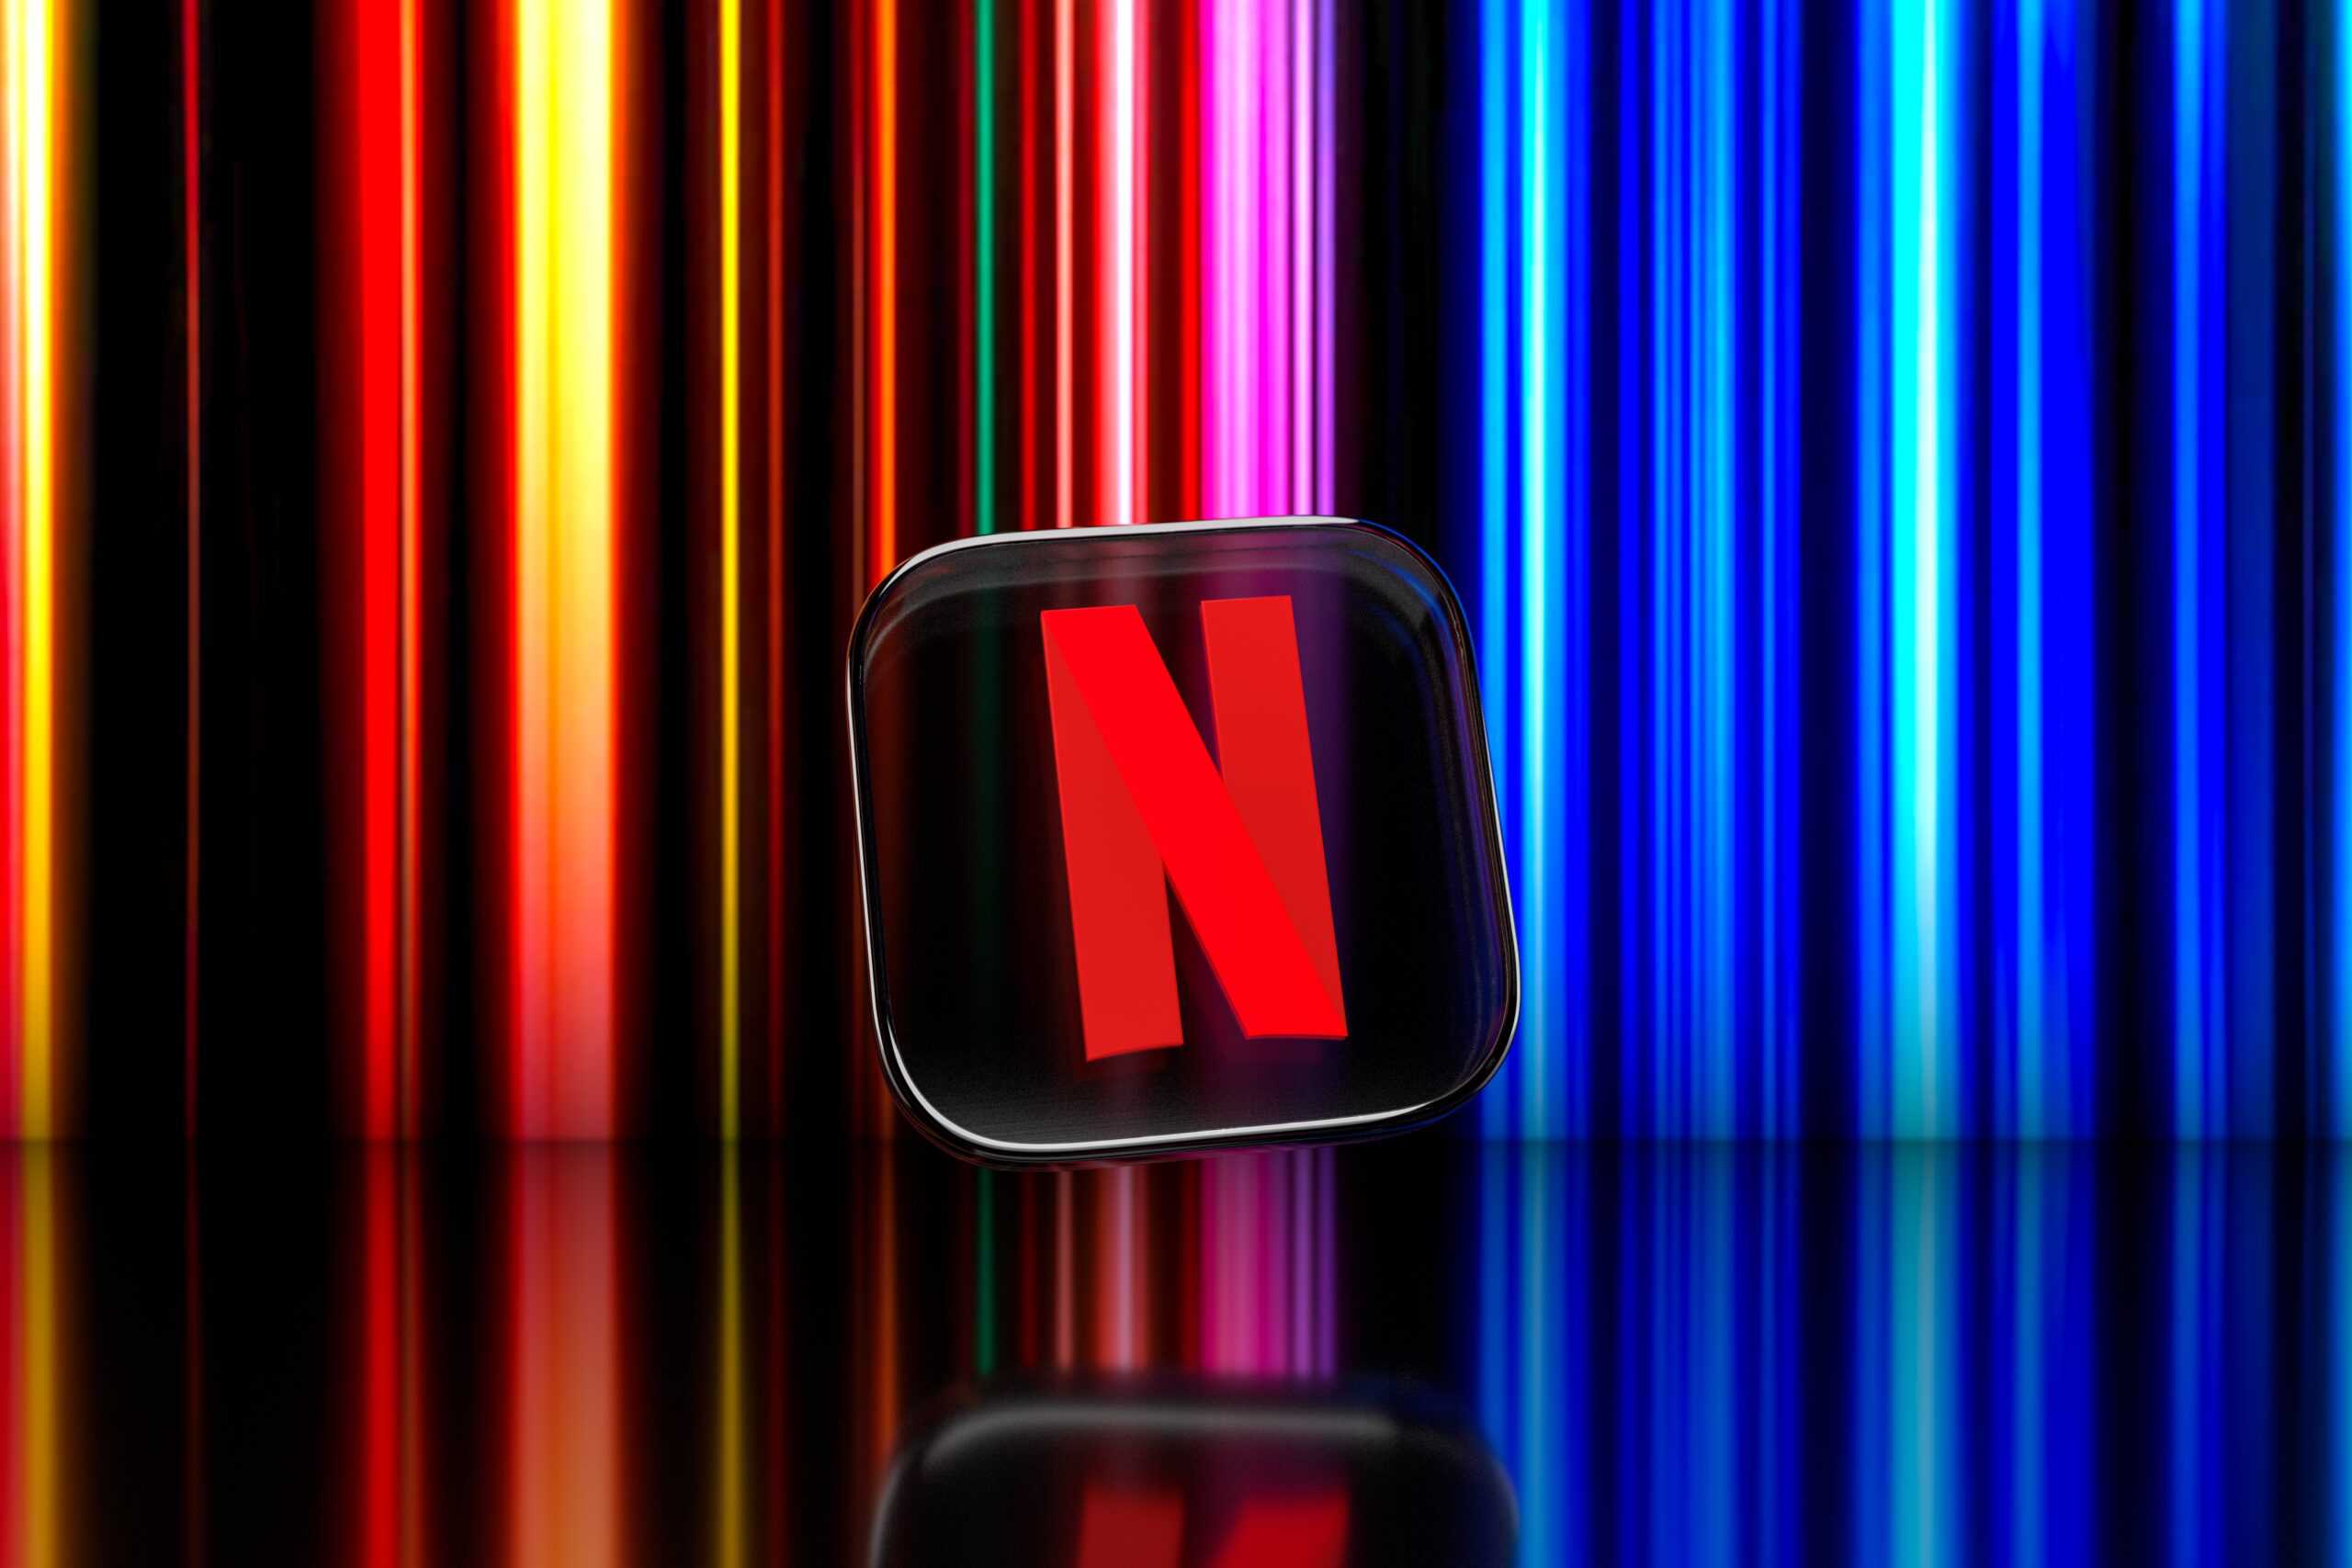 Netflix logo and lighting background